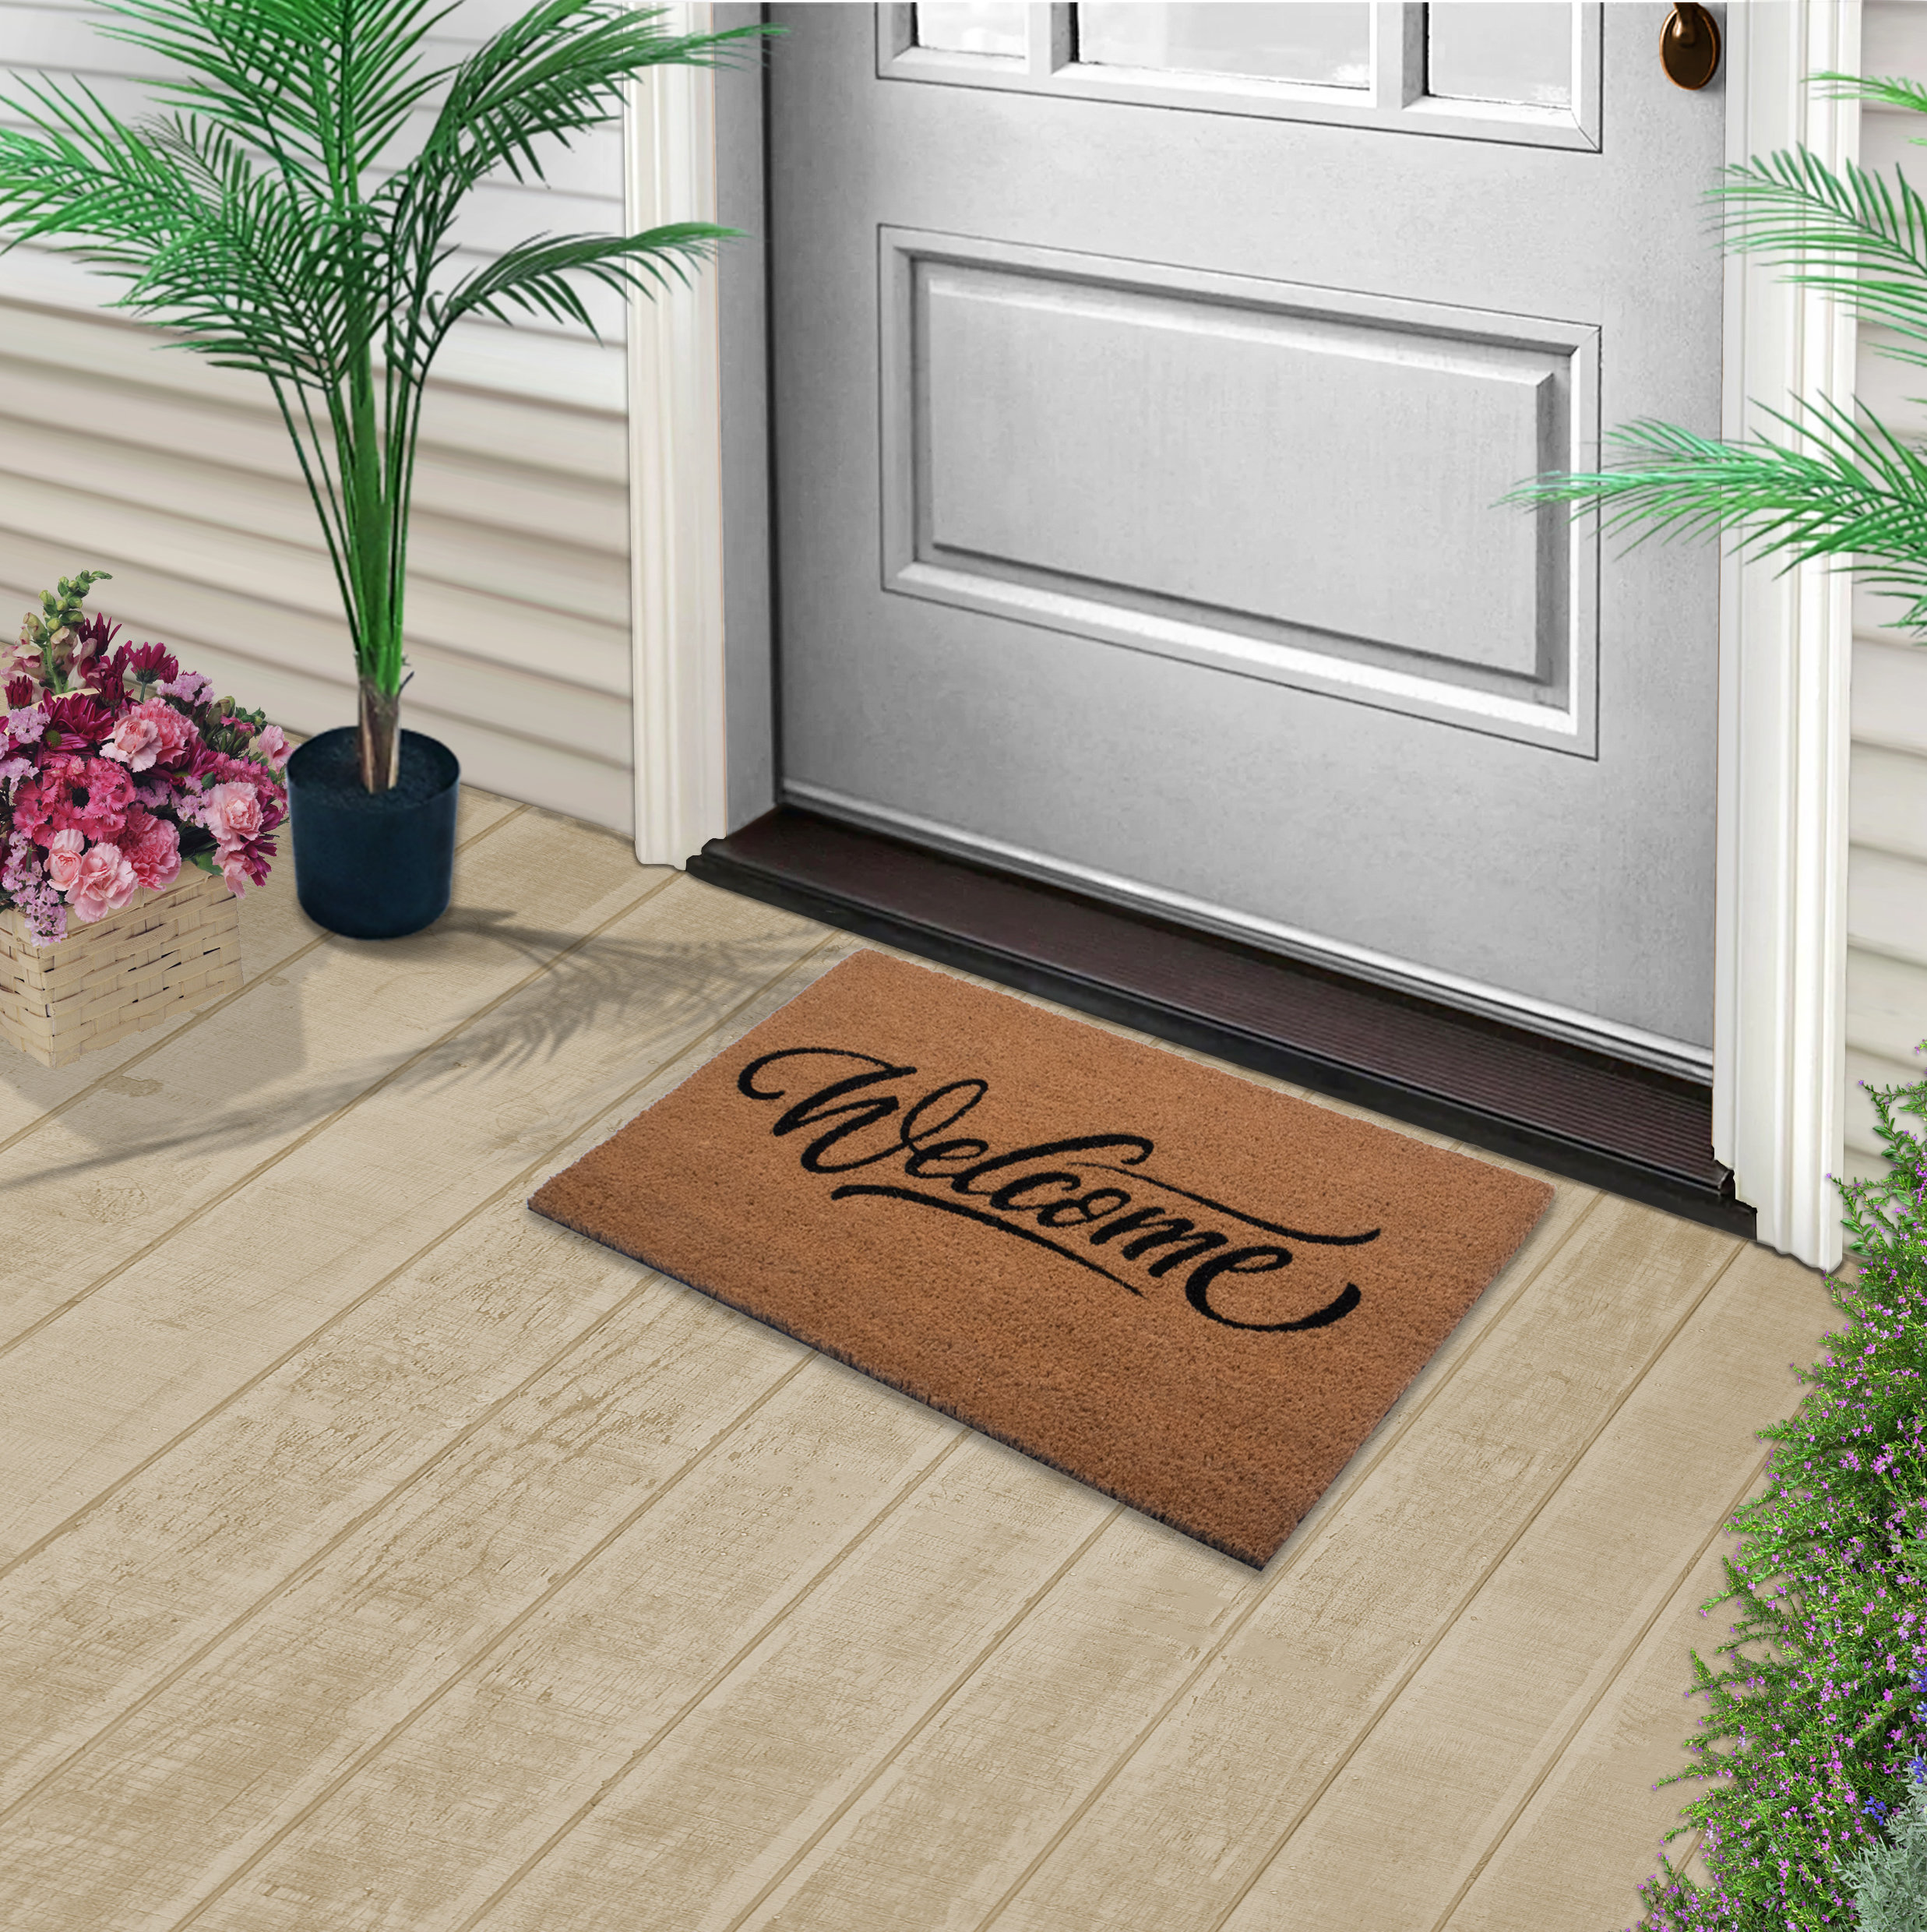 Natural Coir Hello Outdoor Rectangular Doormat 18 x 30